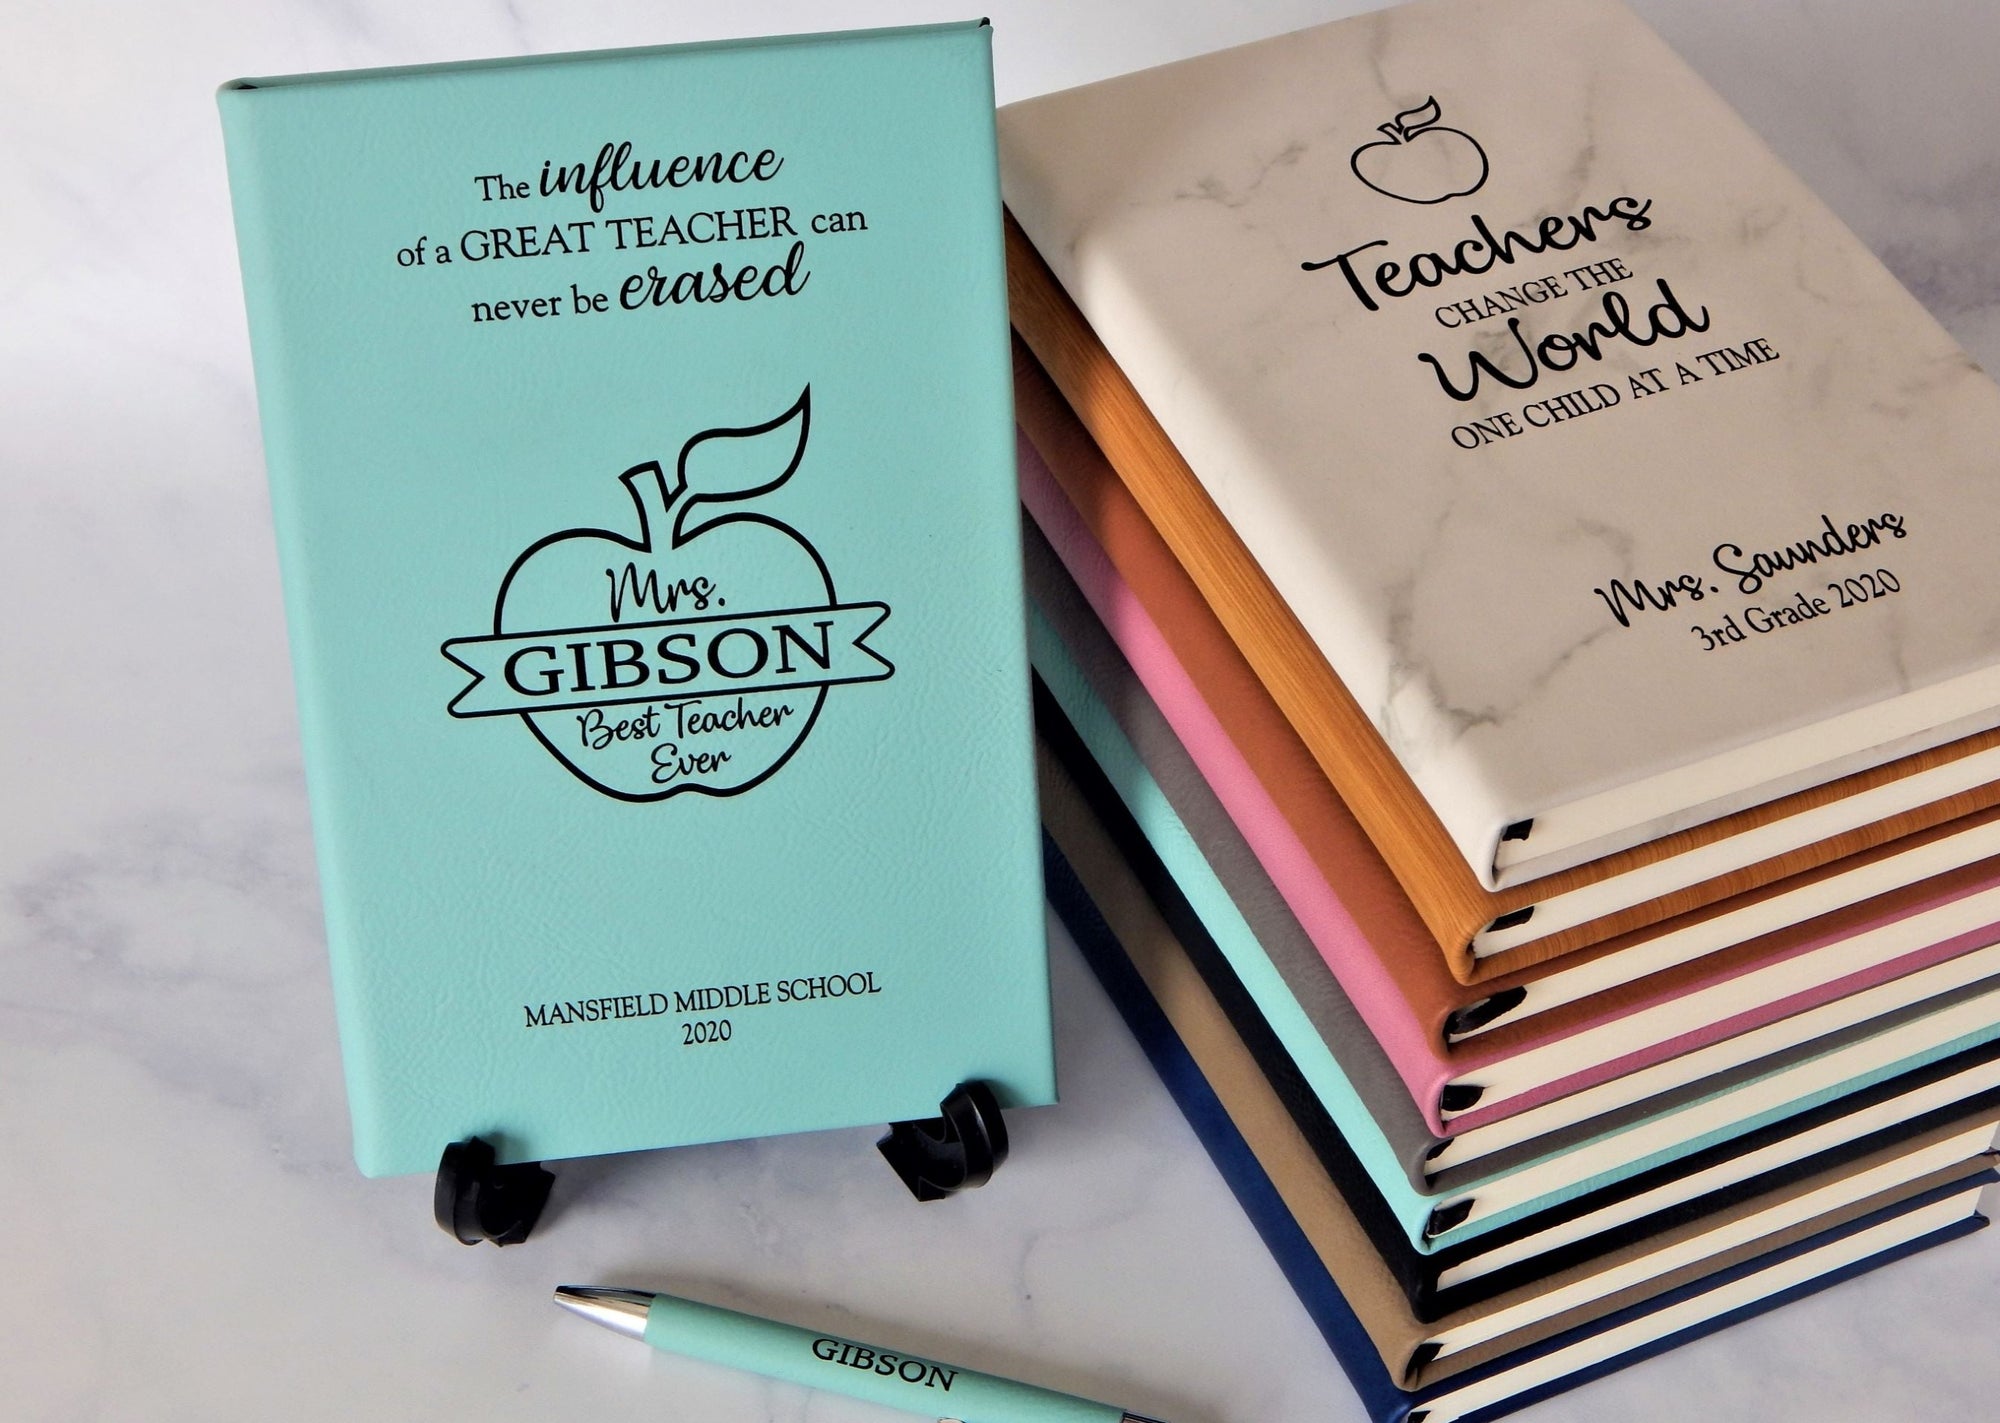 Custom Journal Notebook Gift for Teacher